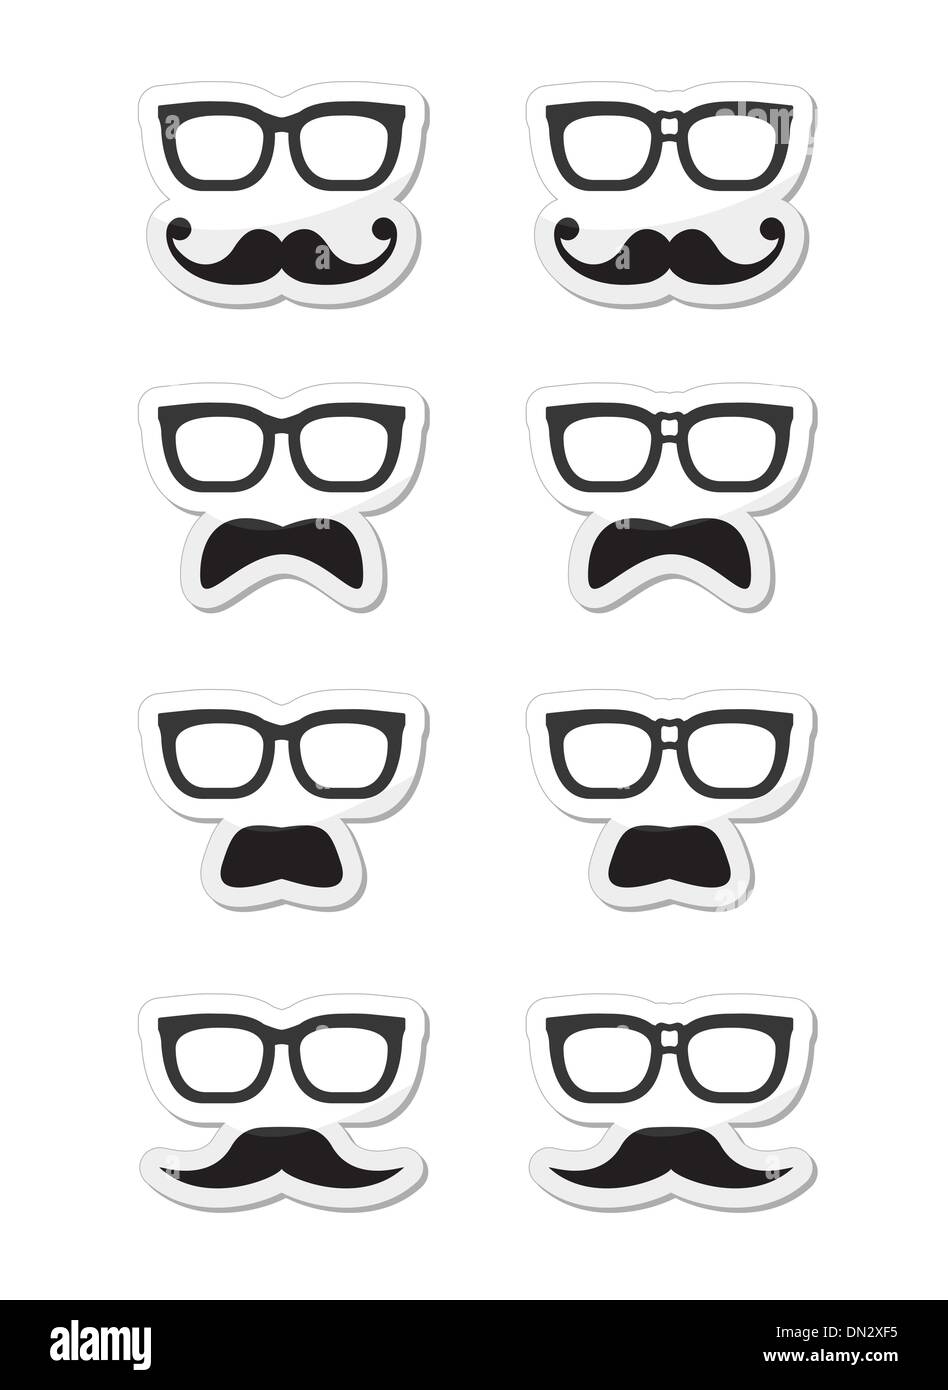 Geek-Brille und Bart oder Schnurrbart Vektor-Etiketten Stock Vektor